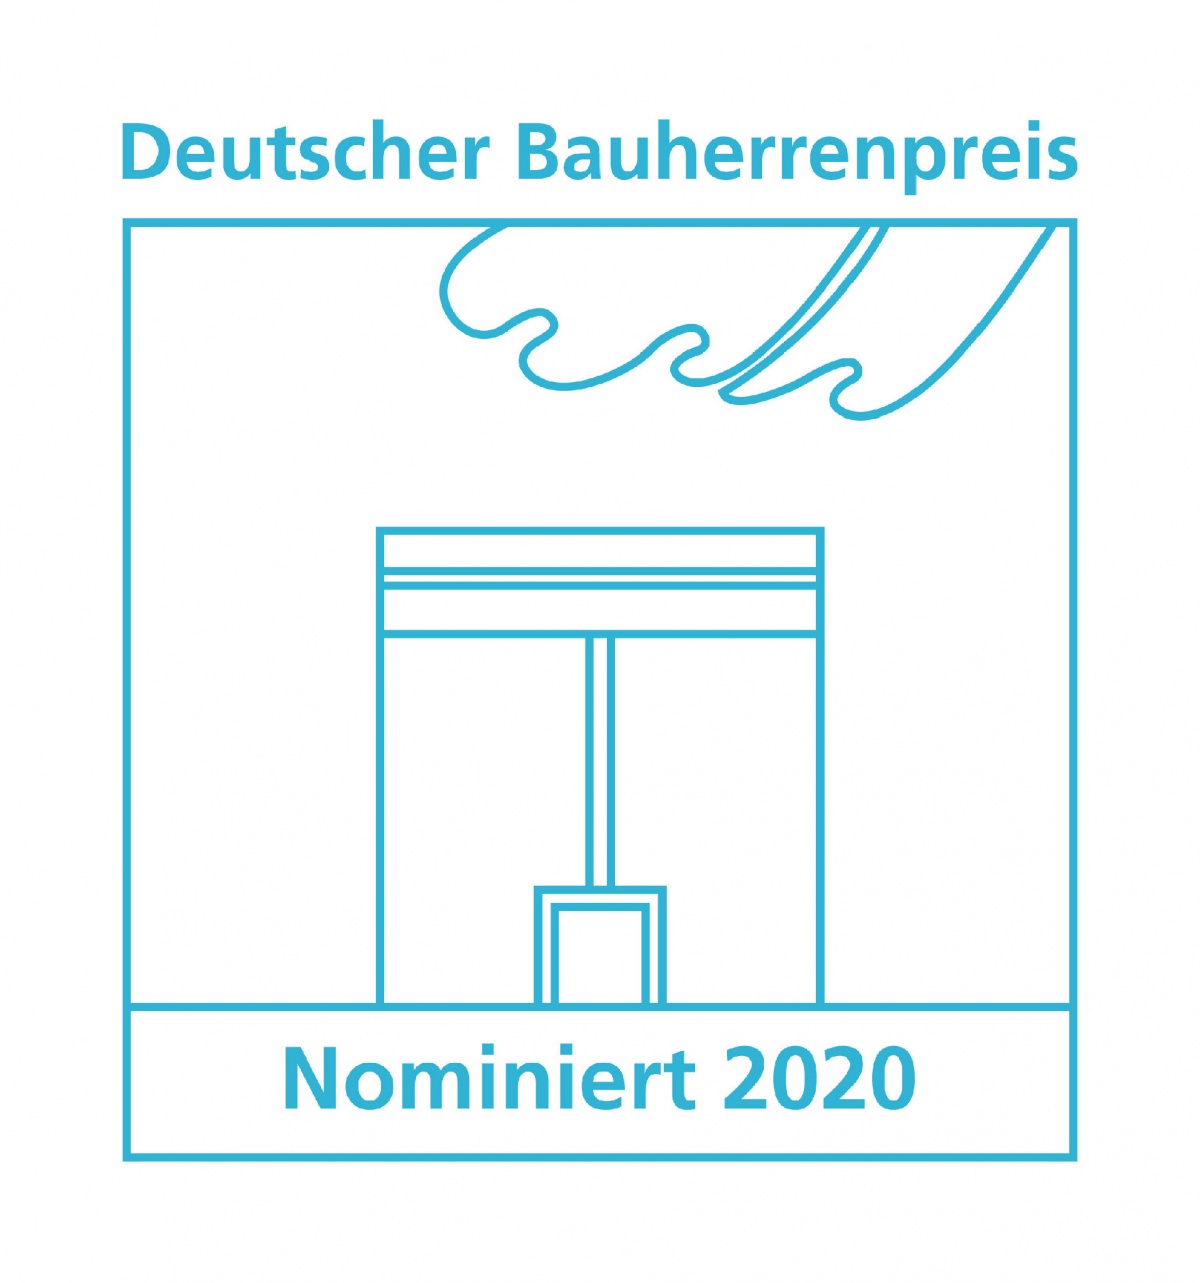 Deutscher Bauherrenpreis 2020 - Nominierungen, Bild: GdW Bundesverband deutscher Wohnungs- und Immobilienunternehmen e.V.